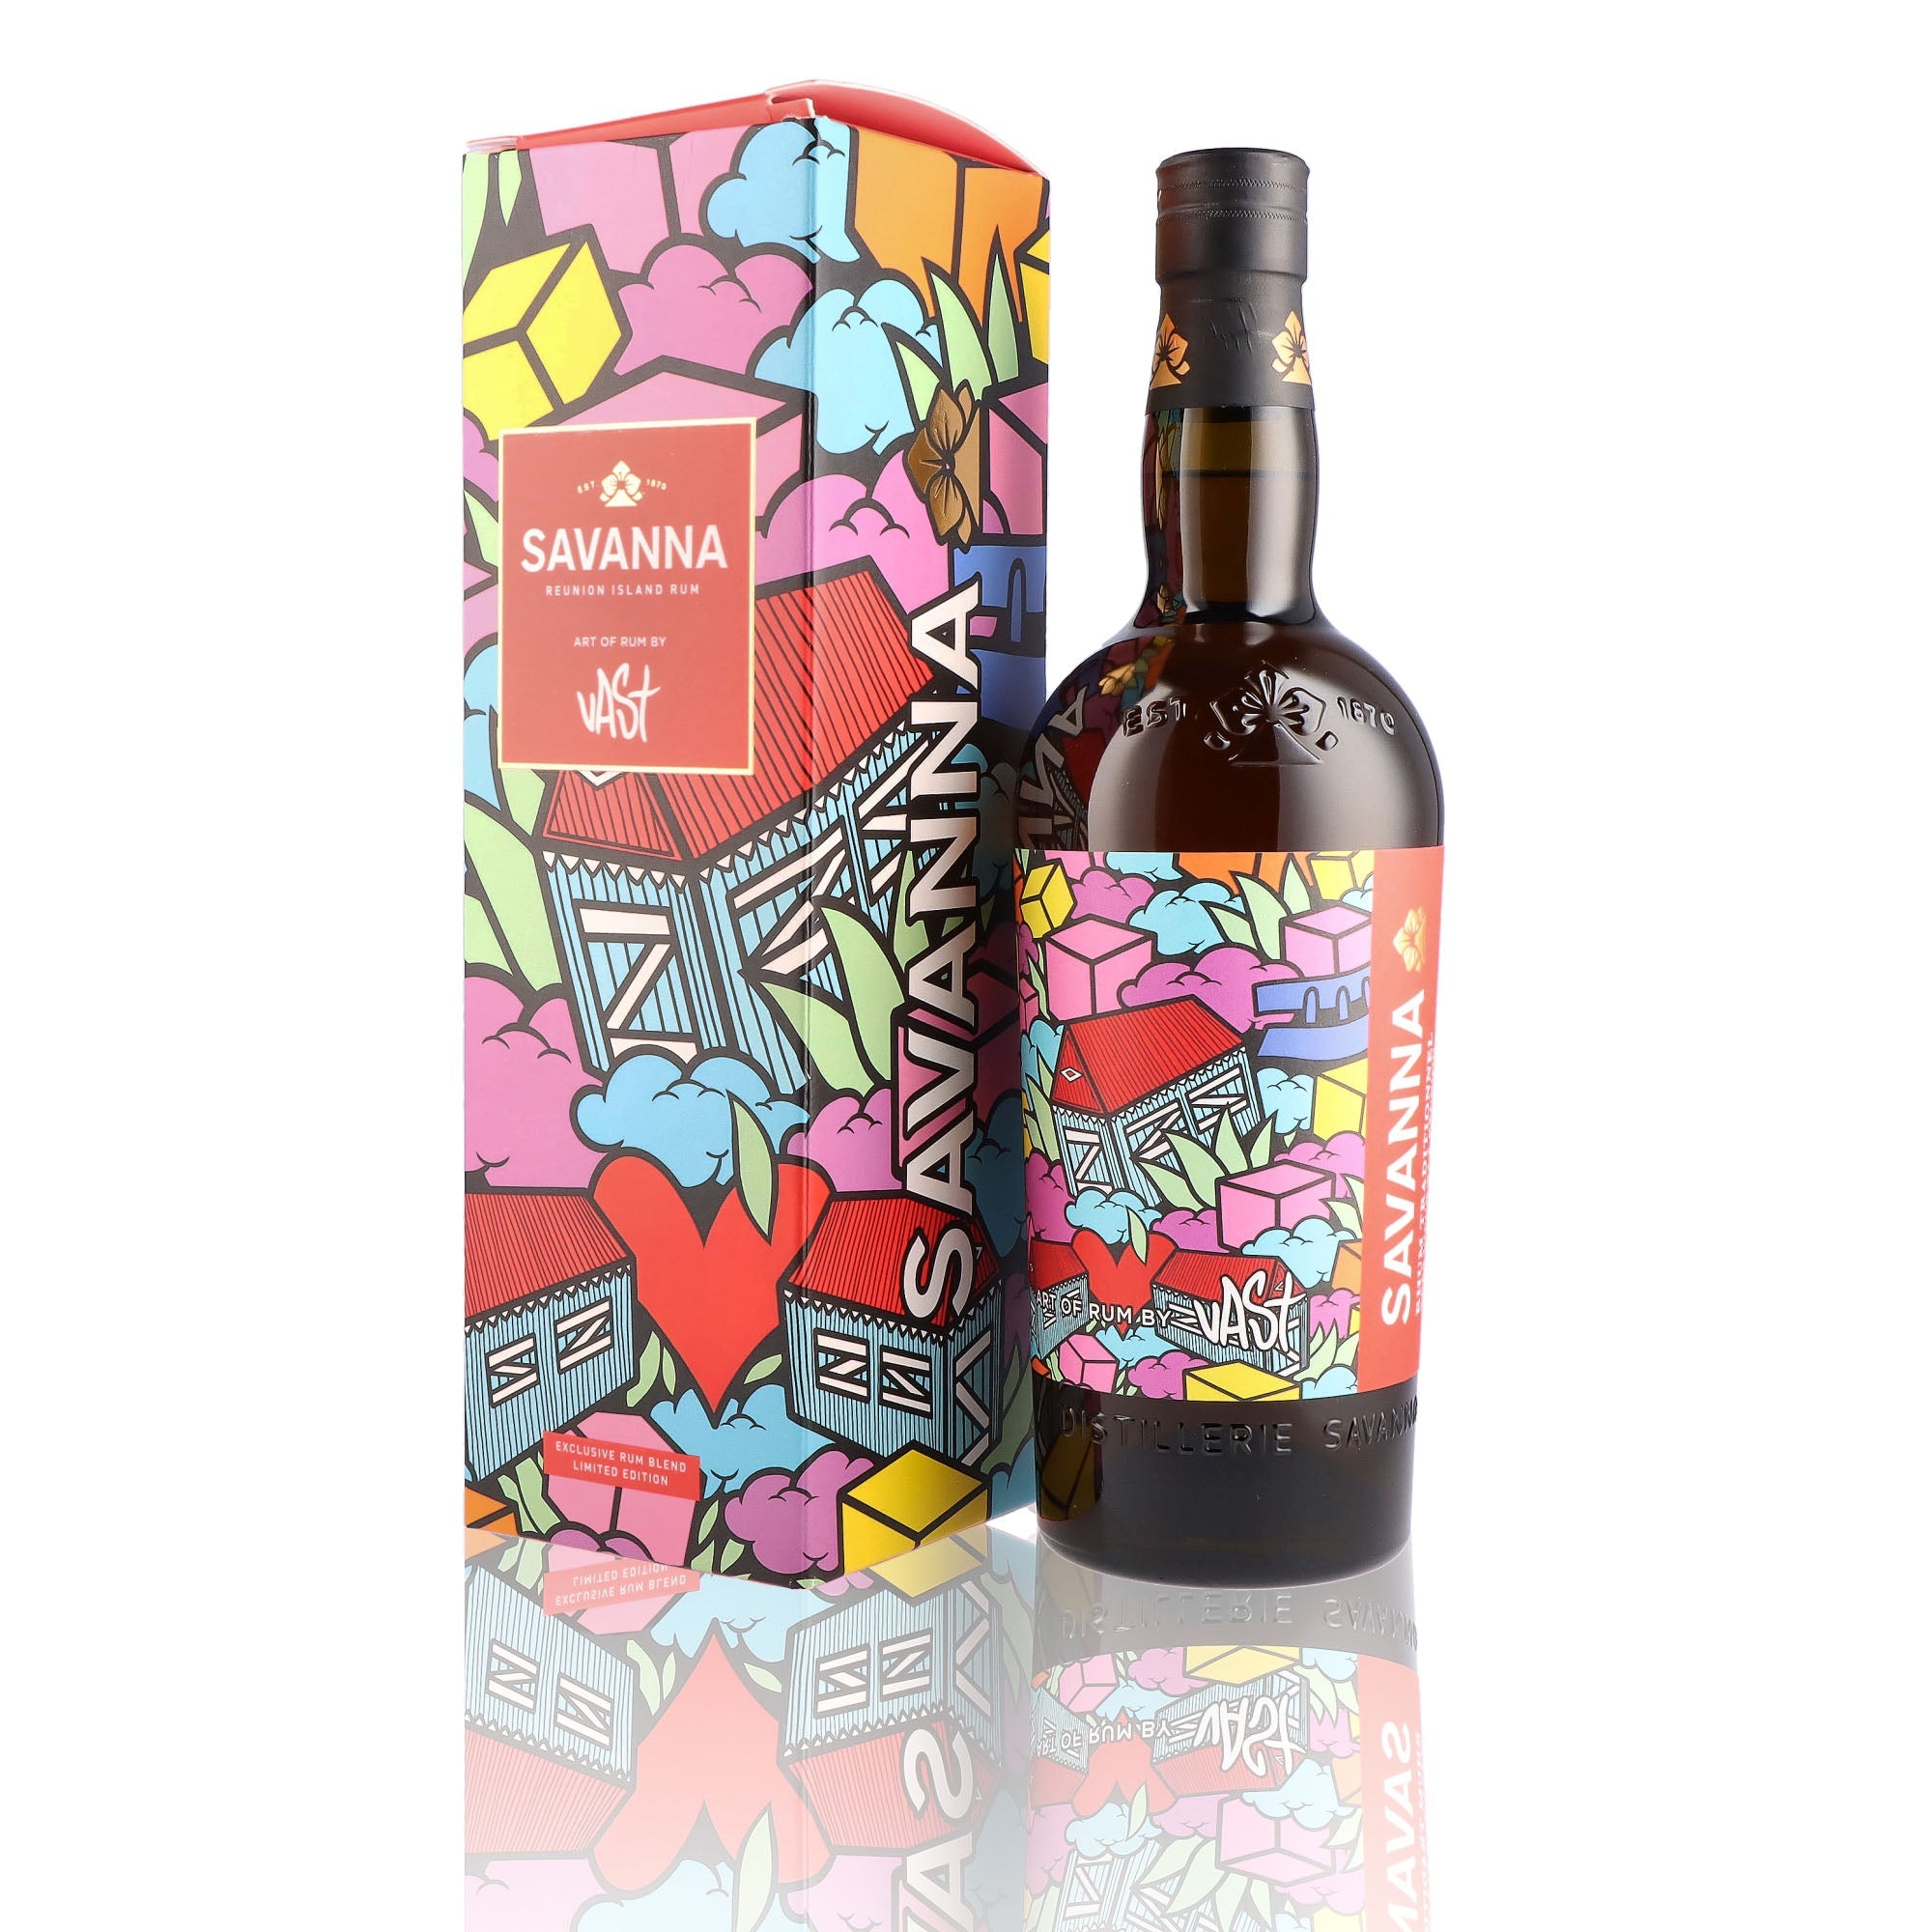 Une bouteille de rhum agricole, de la marque Savanna, nommée Art Of Rum by Vast.